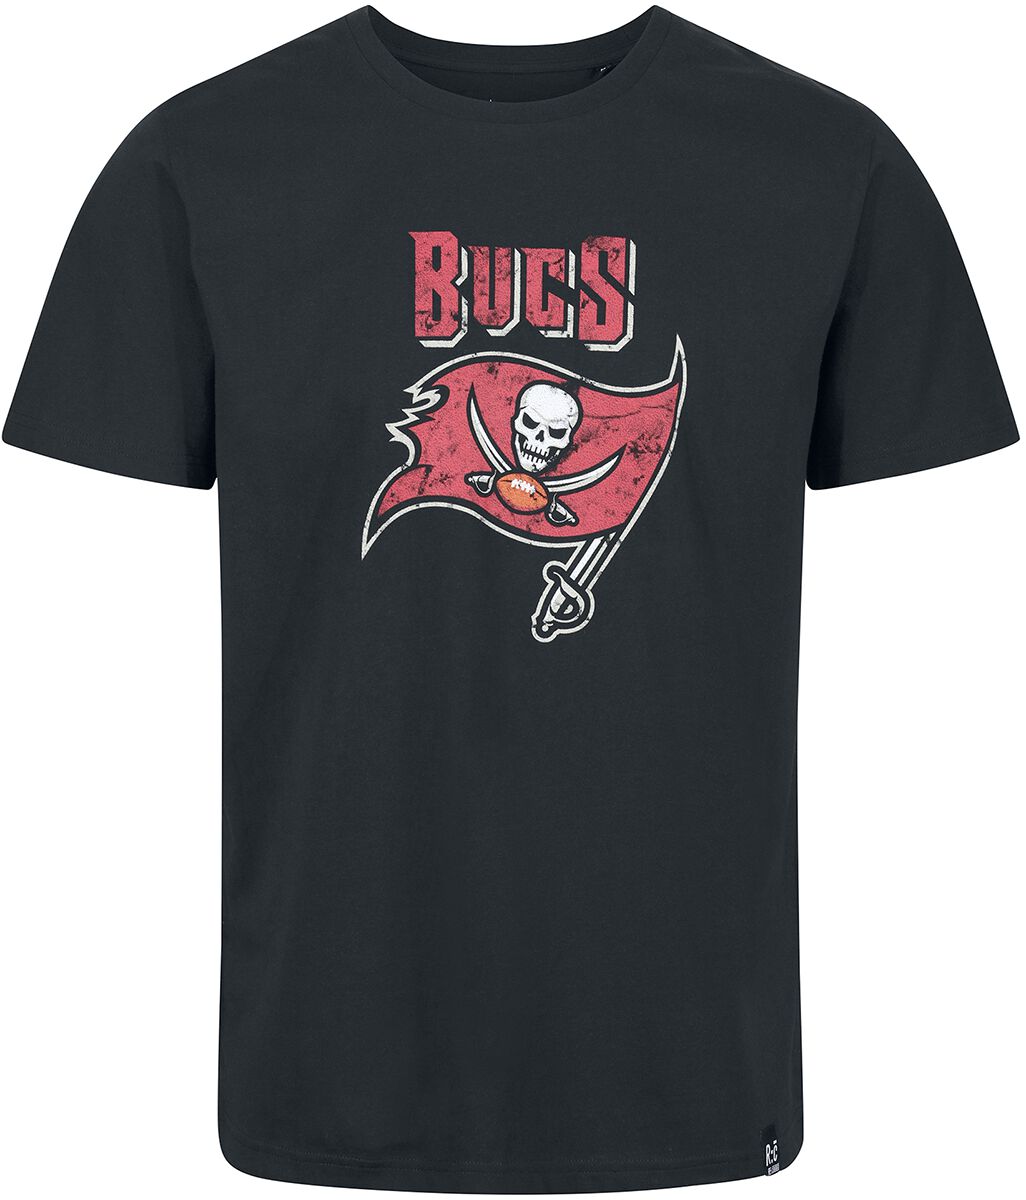 Recovered Clothing T-Shirt - NFL Buccs Logo - S bis XXL - für Männer - Größe M - schwarz